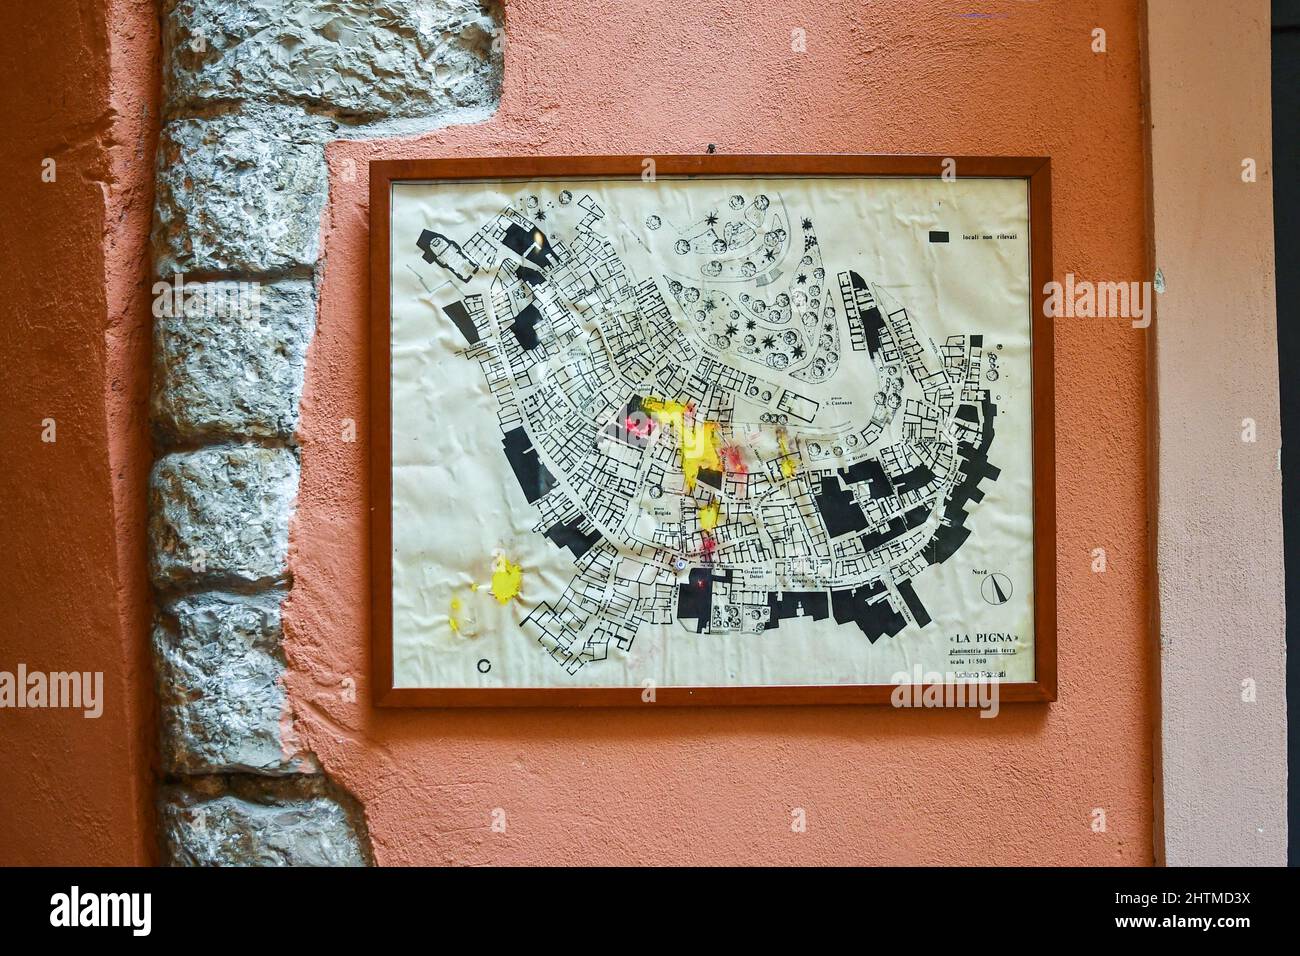 Vue rapprochée d'une carte du quartier médiéval de la Pigna accrochée à un mur dans la vieille ville de Sanremo, Imperia, Ligurie, Italie Banque D'Images